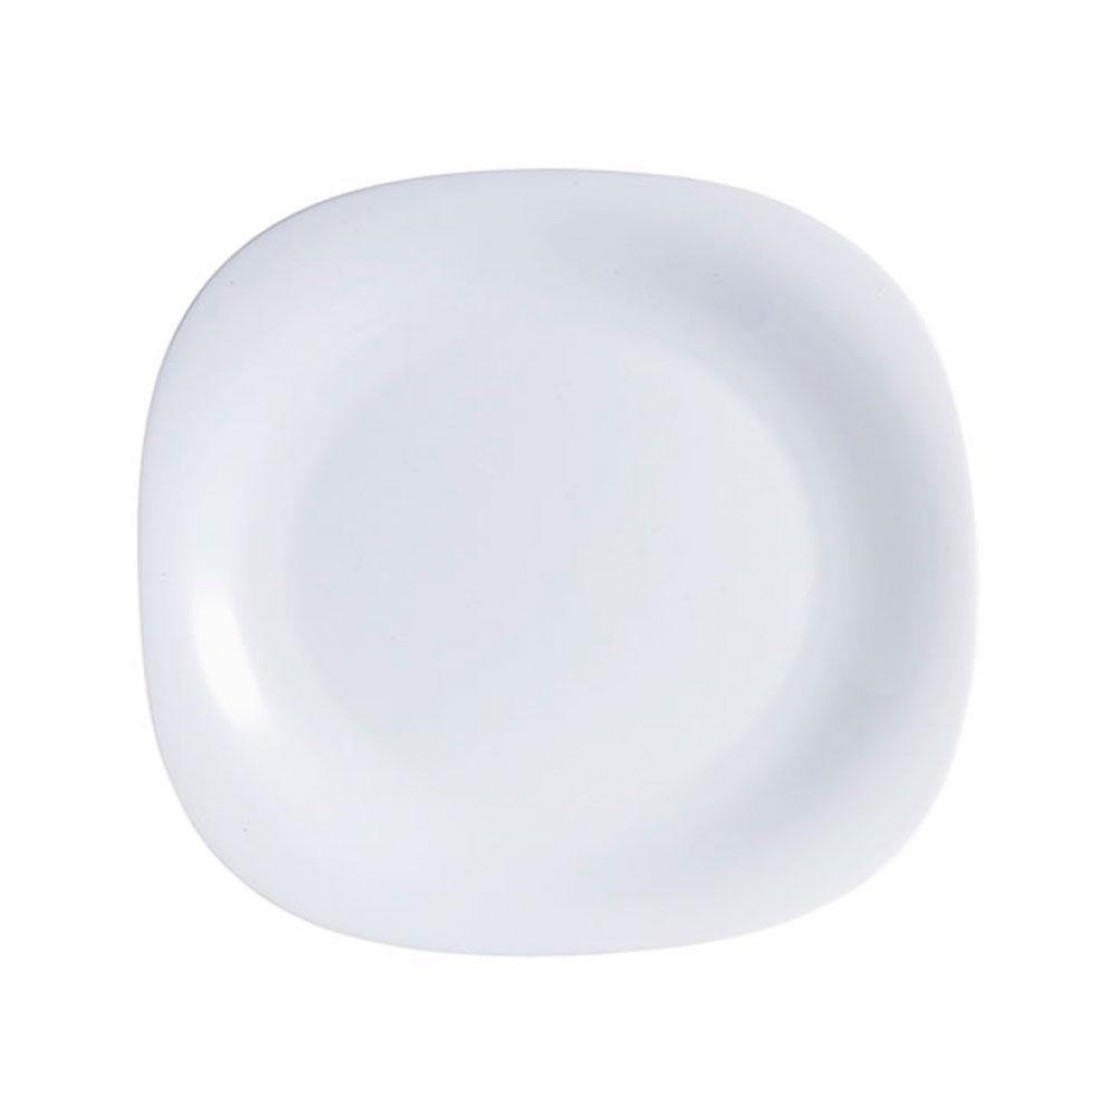 Prato Sobremesa - Luminarc 19cm Carine White